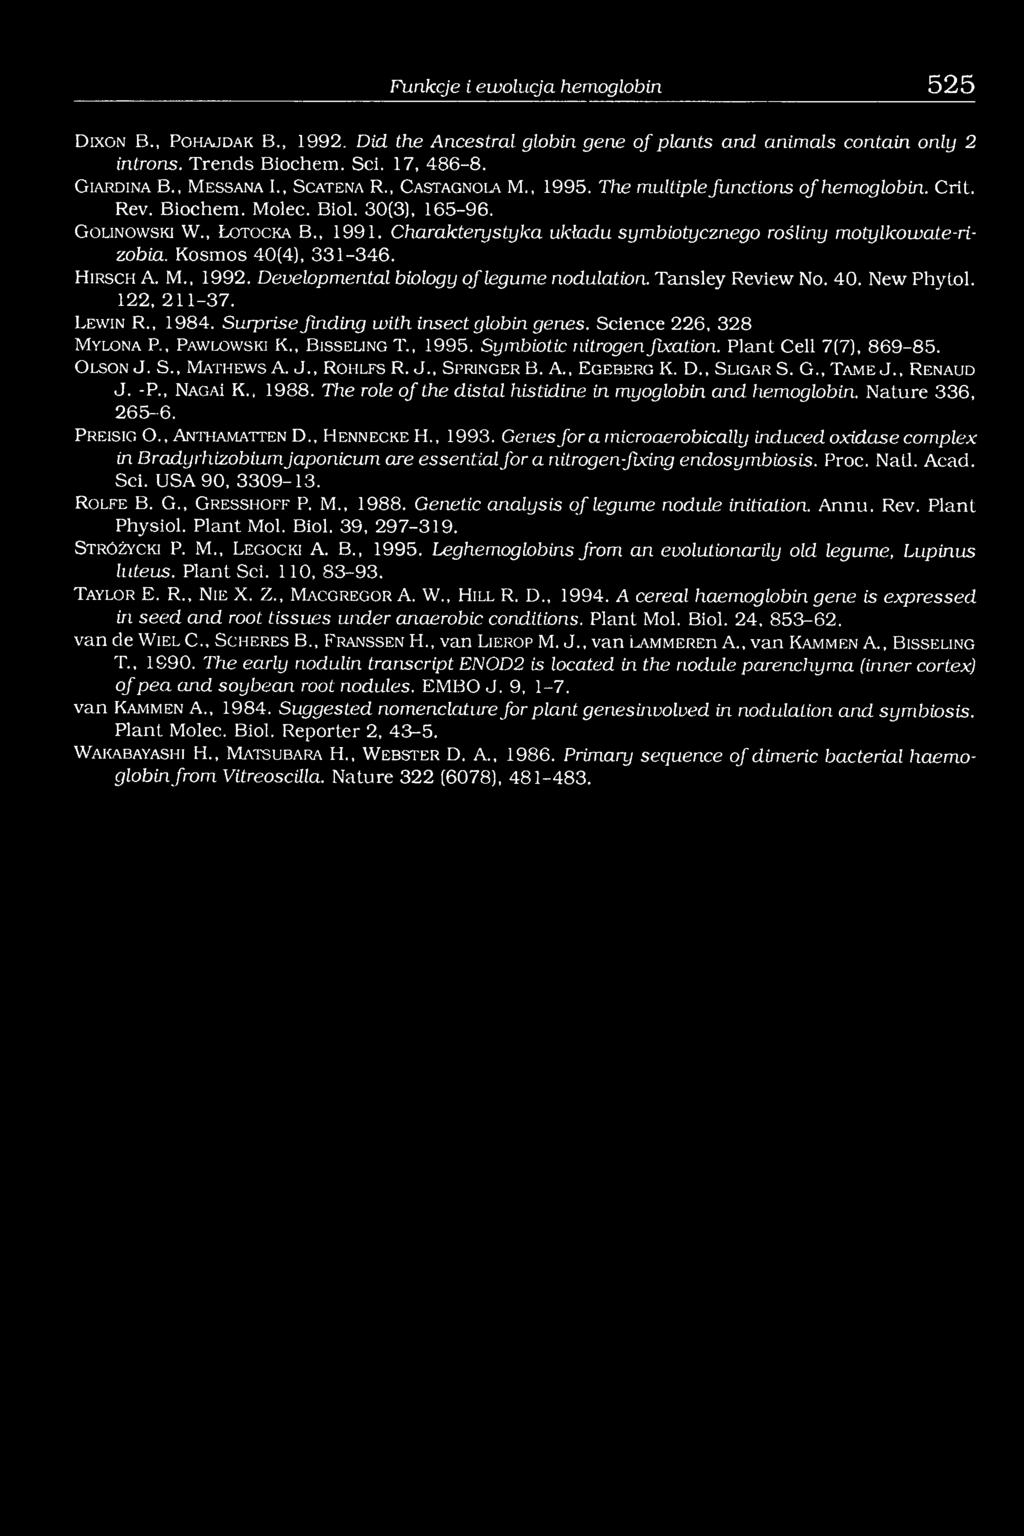 Charakterystyka układu symbiotycznego rośliny motylkowate-rizobia. Kosmos 40(4), 331-346. H ir s c h A. M., 1992. Developmental biology o f legume nodulation. Tansley Review No. 40. New Phytol.